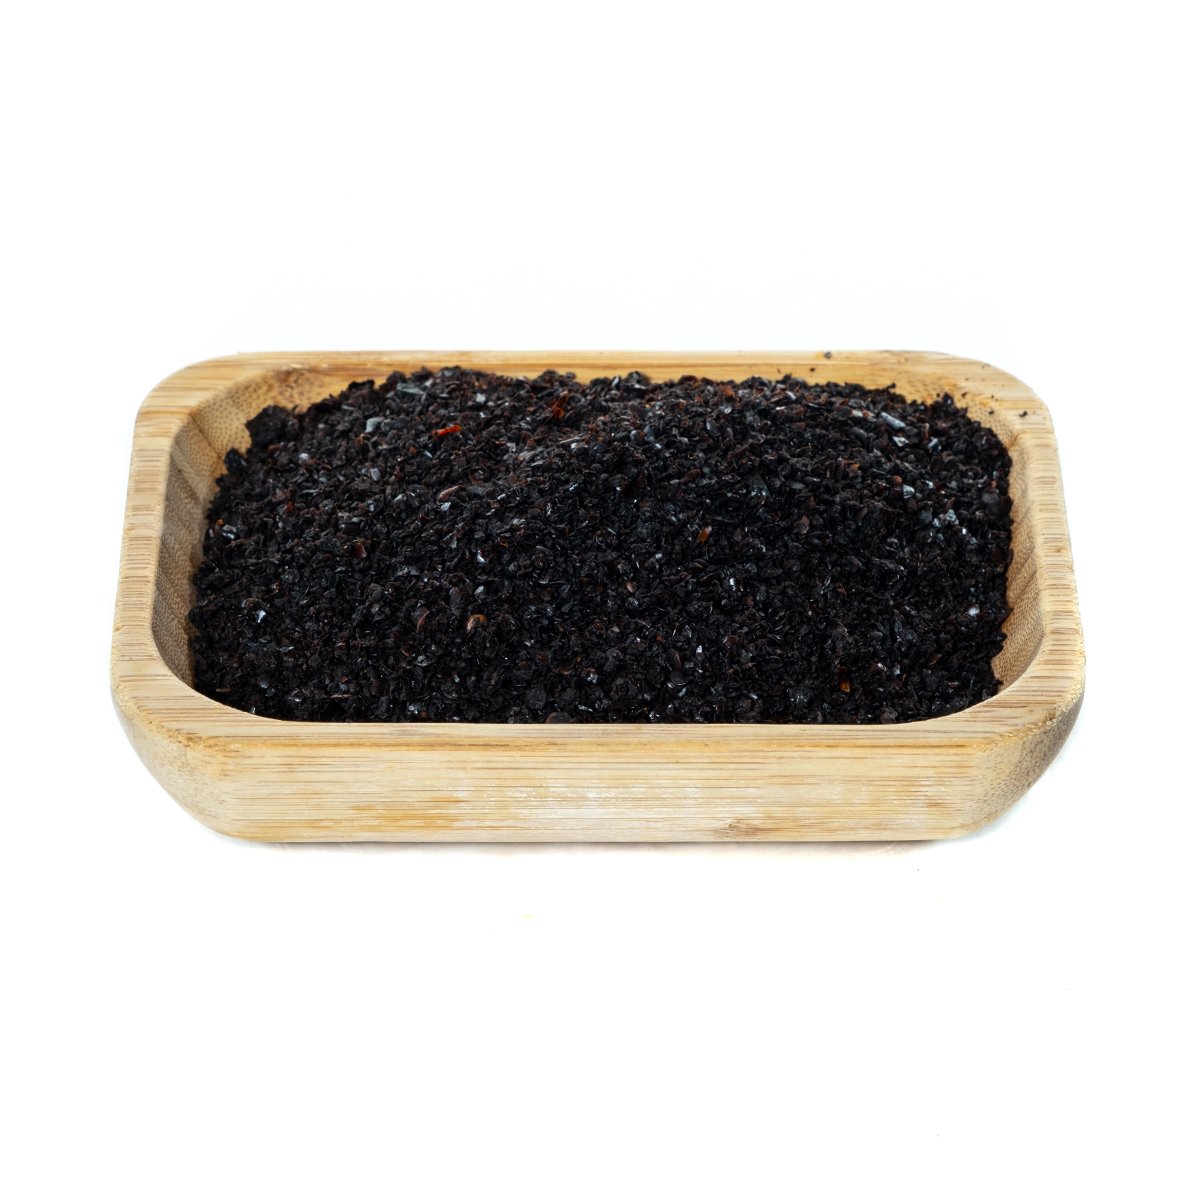 Urfa Siyah Pul Biber İsot (250 gr)